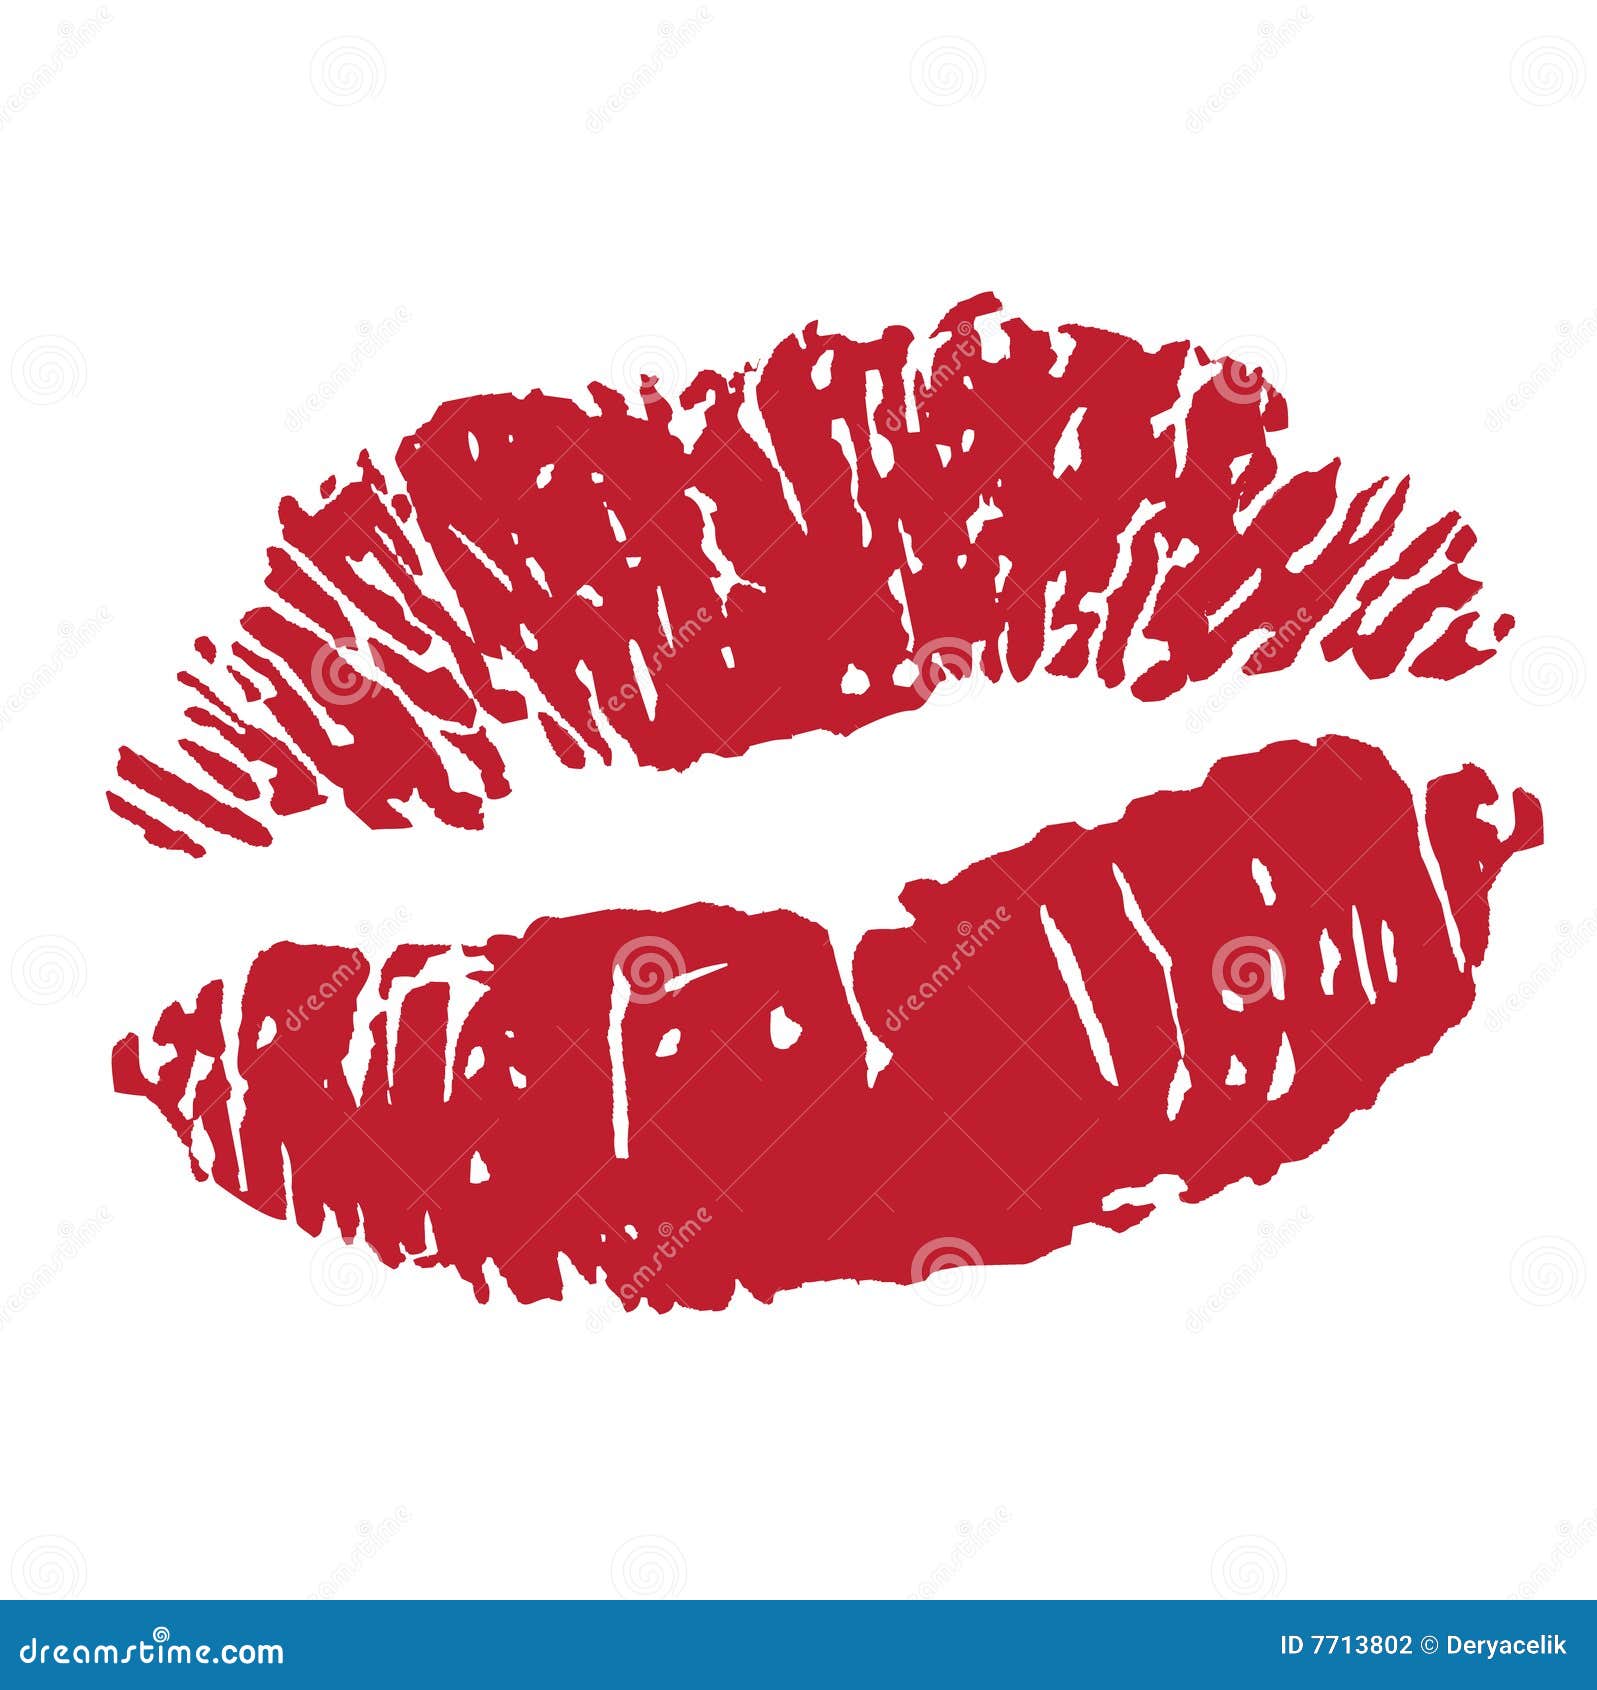 clipart lipstick kiss - photo #33